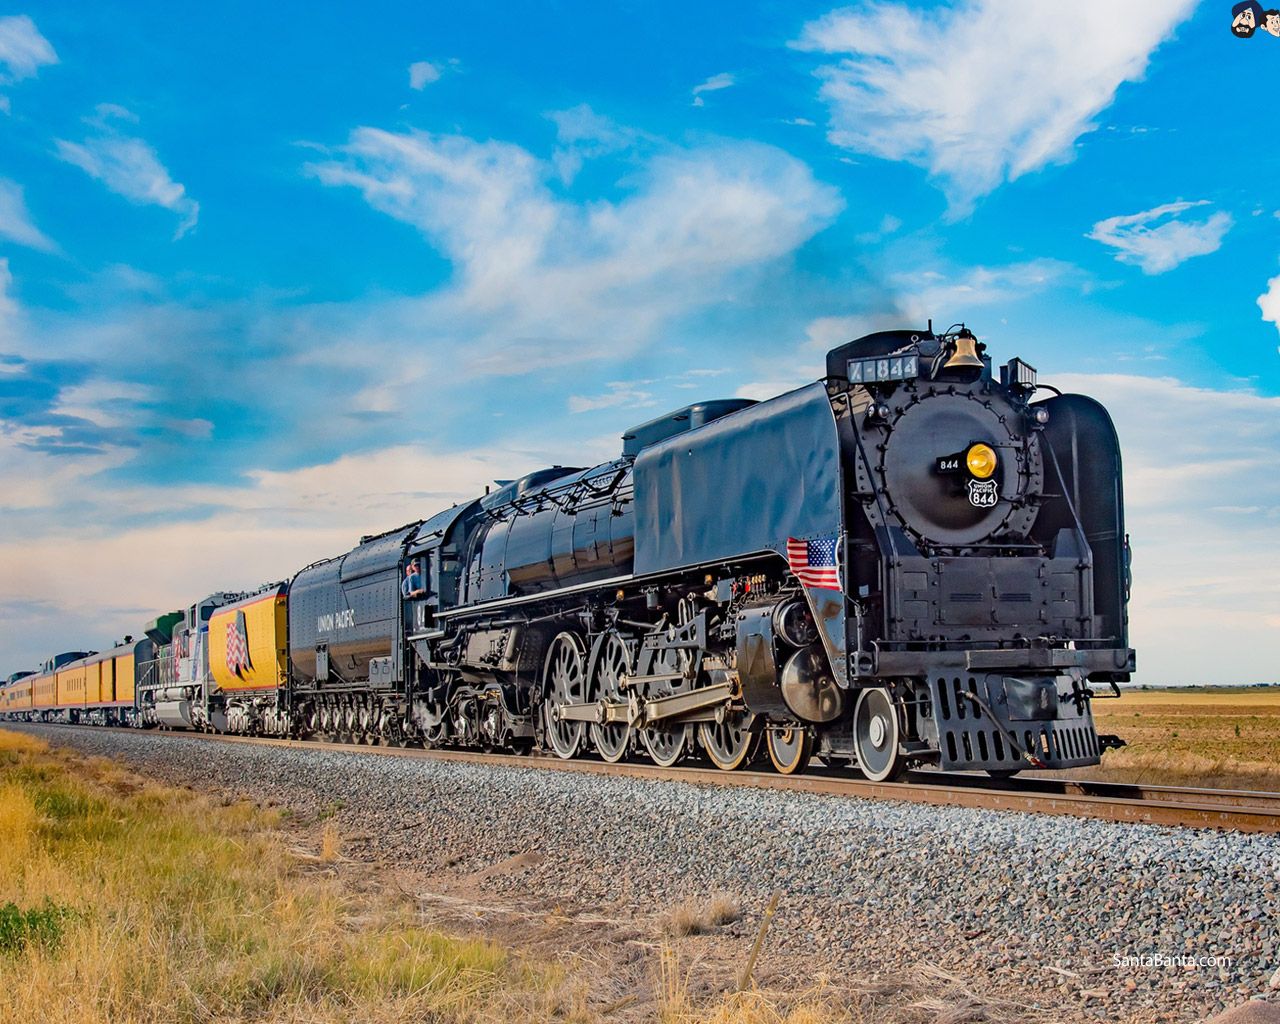 Union Pacific`s freight hauling railroad (Steam engine retro train)